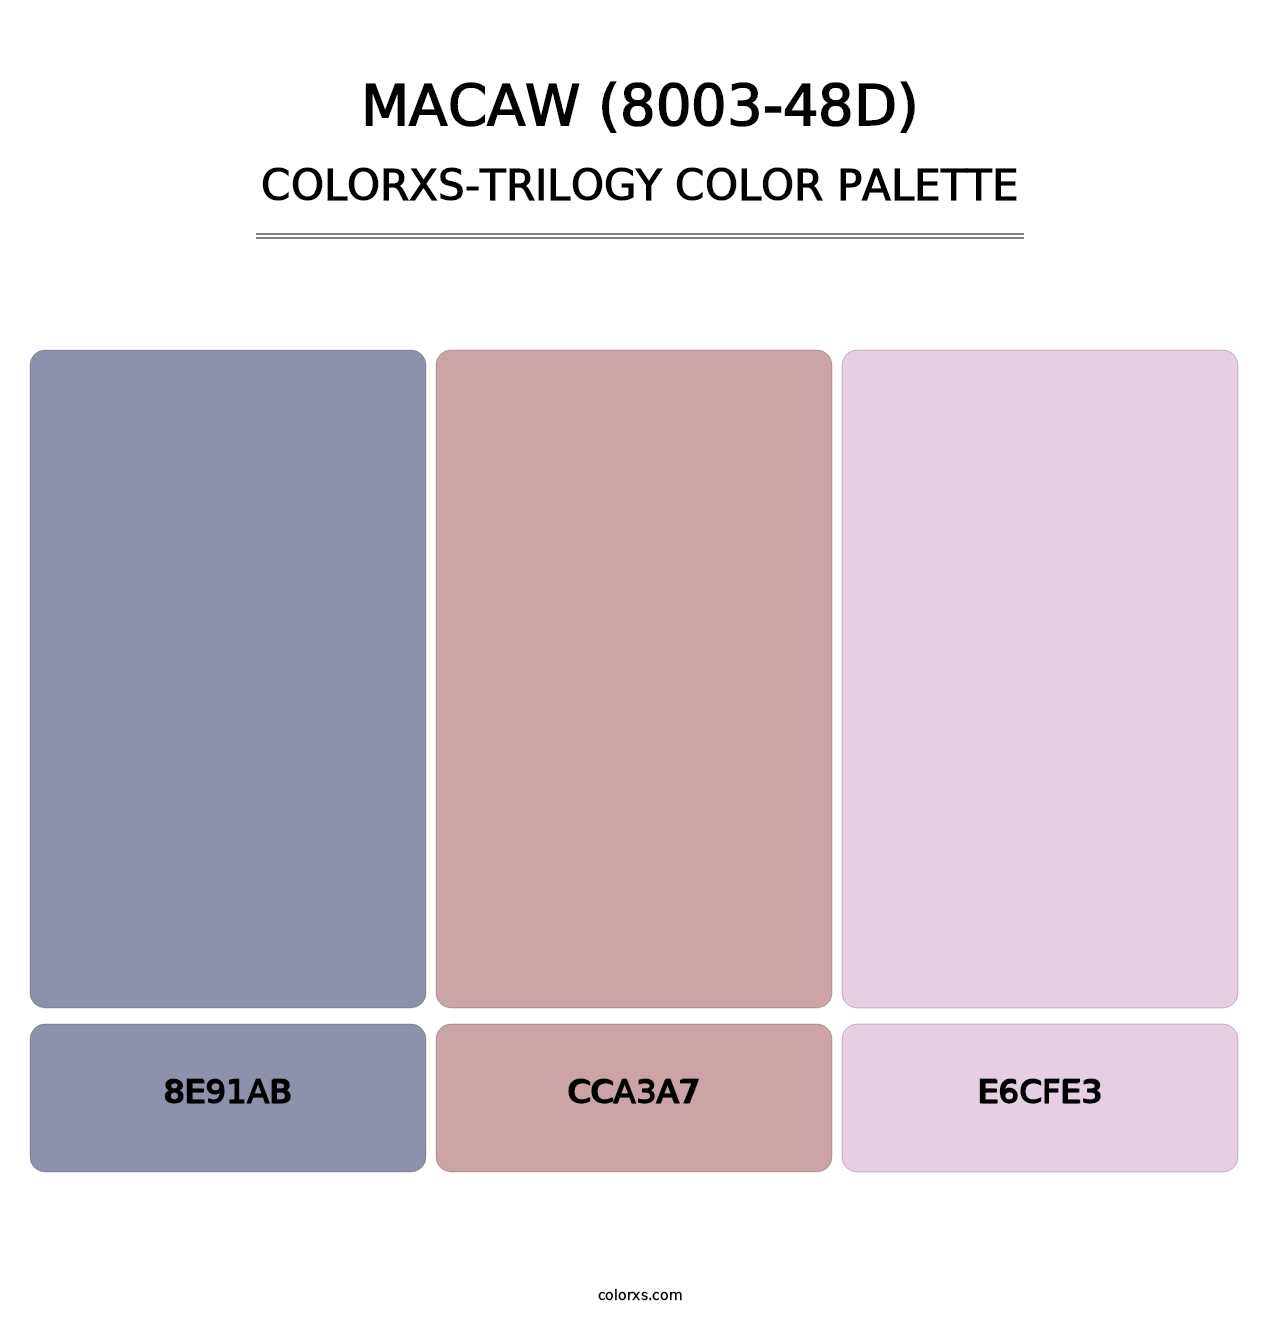 Macaw (8003-48D) - Colorxs Trilogy Palette